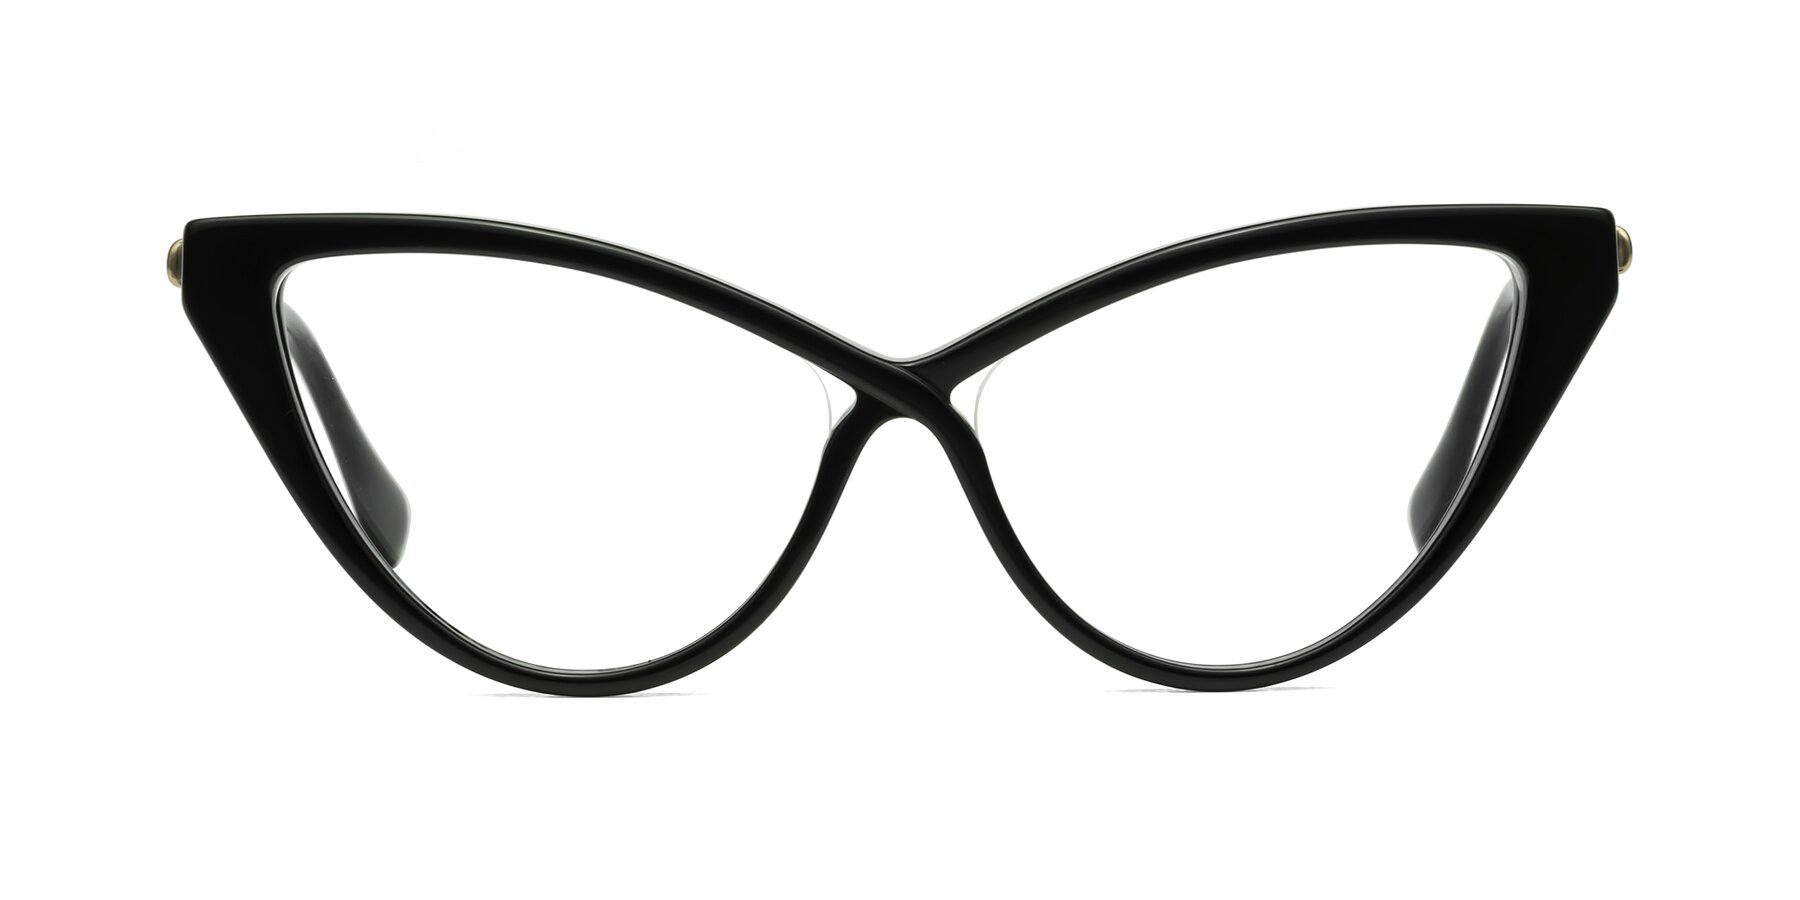 Lucasta - Black Sunglasses Frame